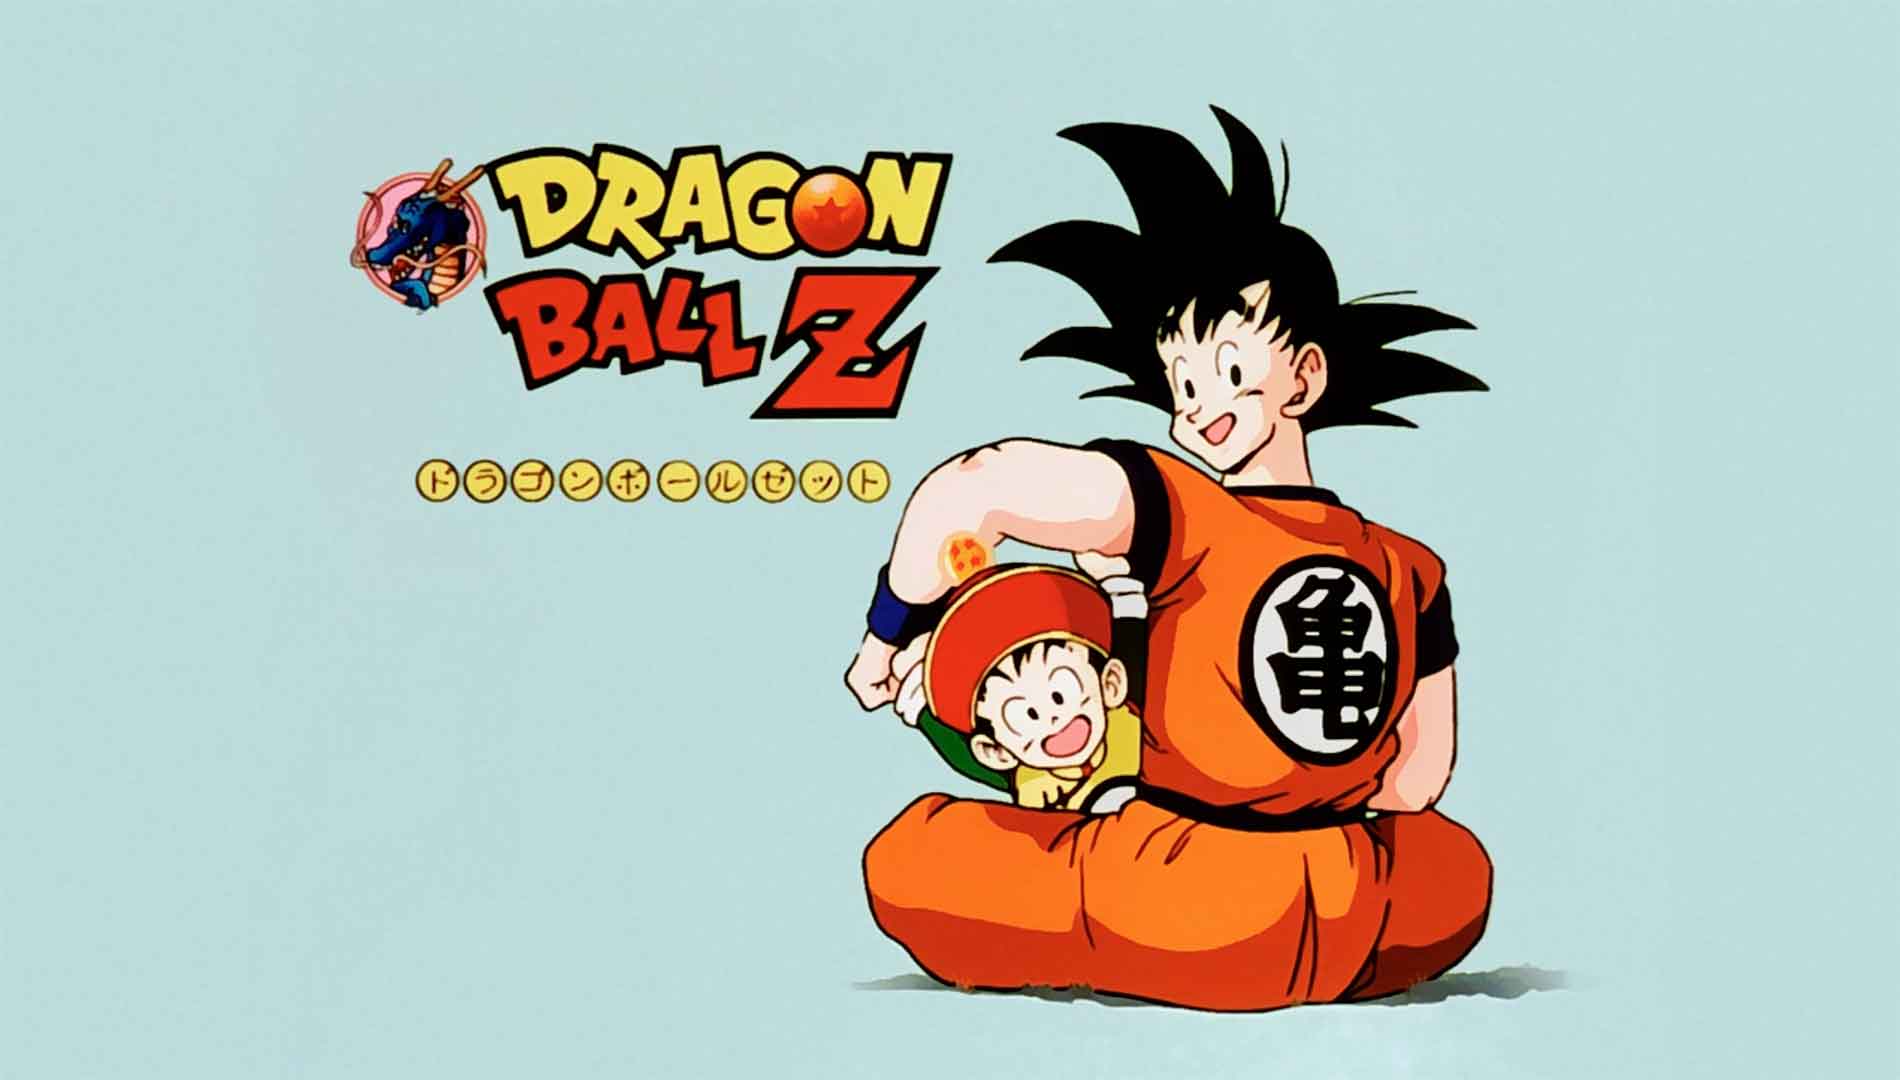 Dragon Ball Z celebra su 32 aniversario, GamersRD